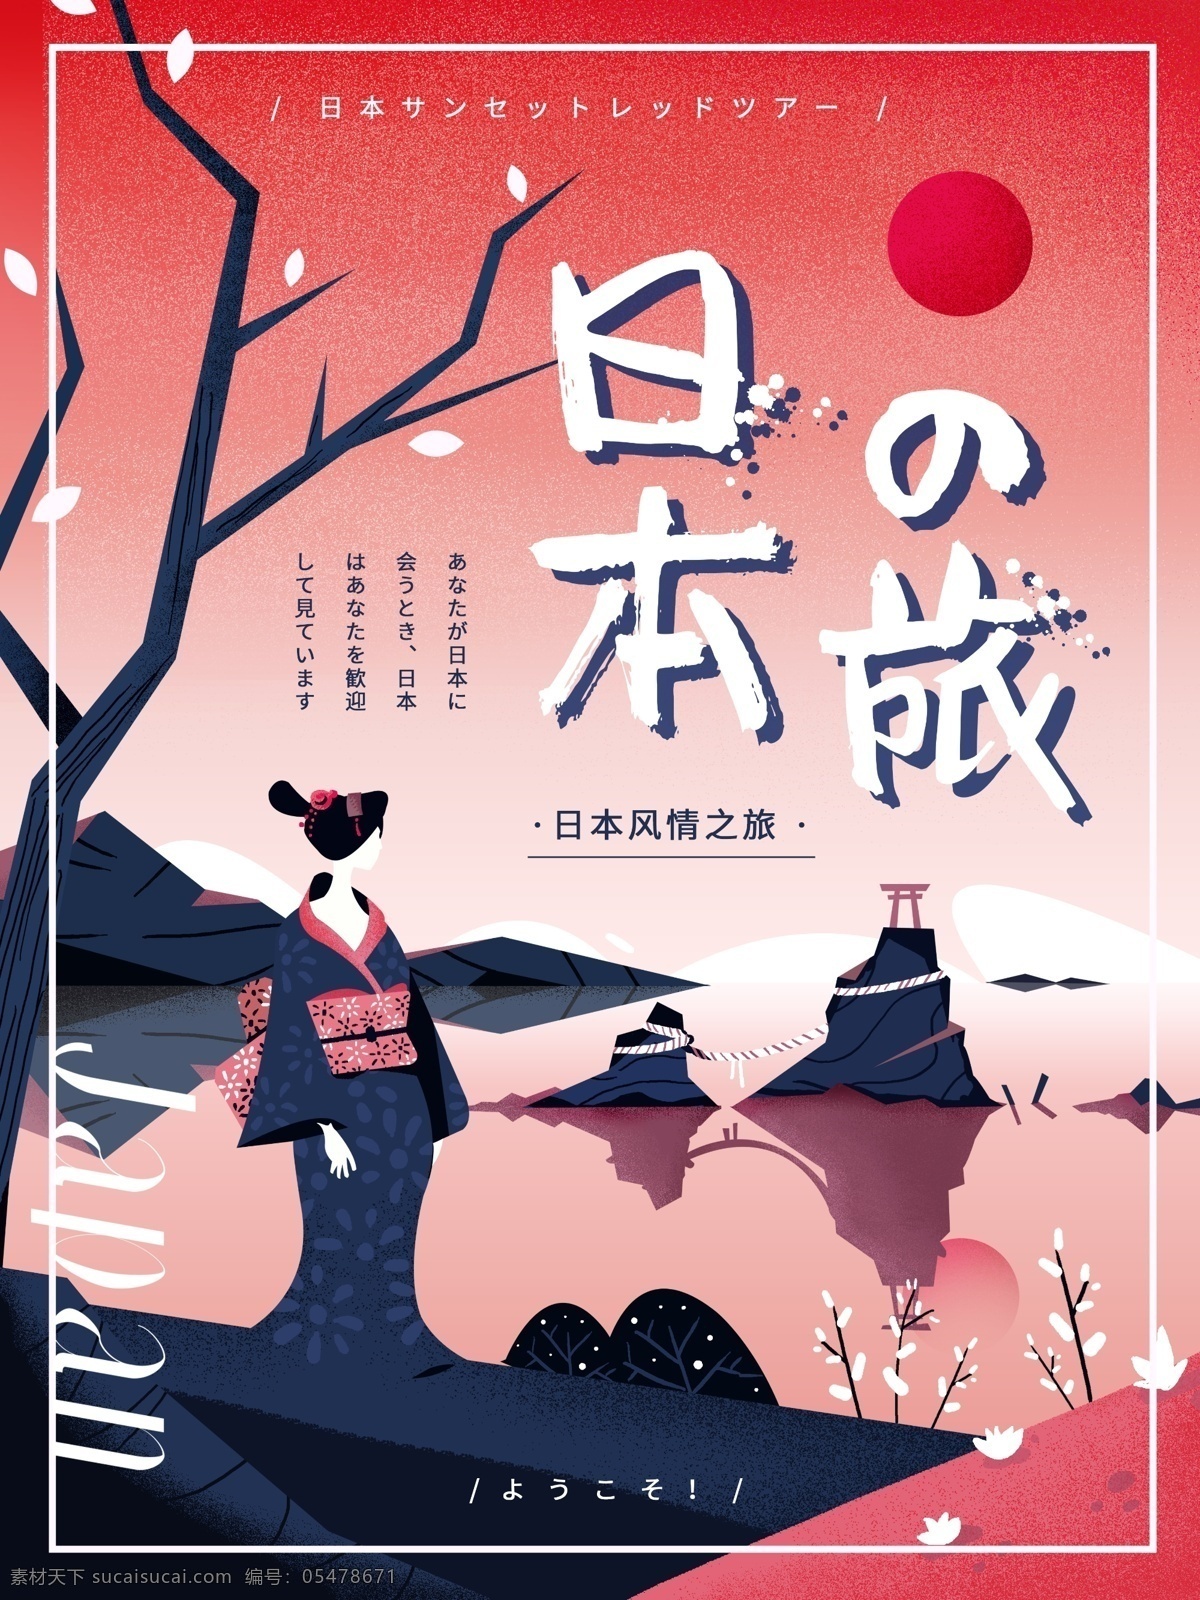 原创 手绘 扁平 风格 日本旅游 宣传海报 日本 抽象 红色 渐变 旅游 和服